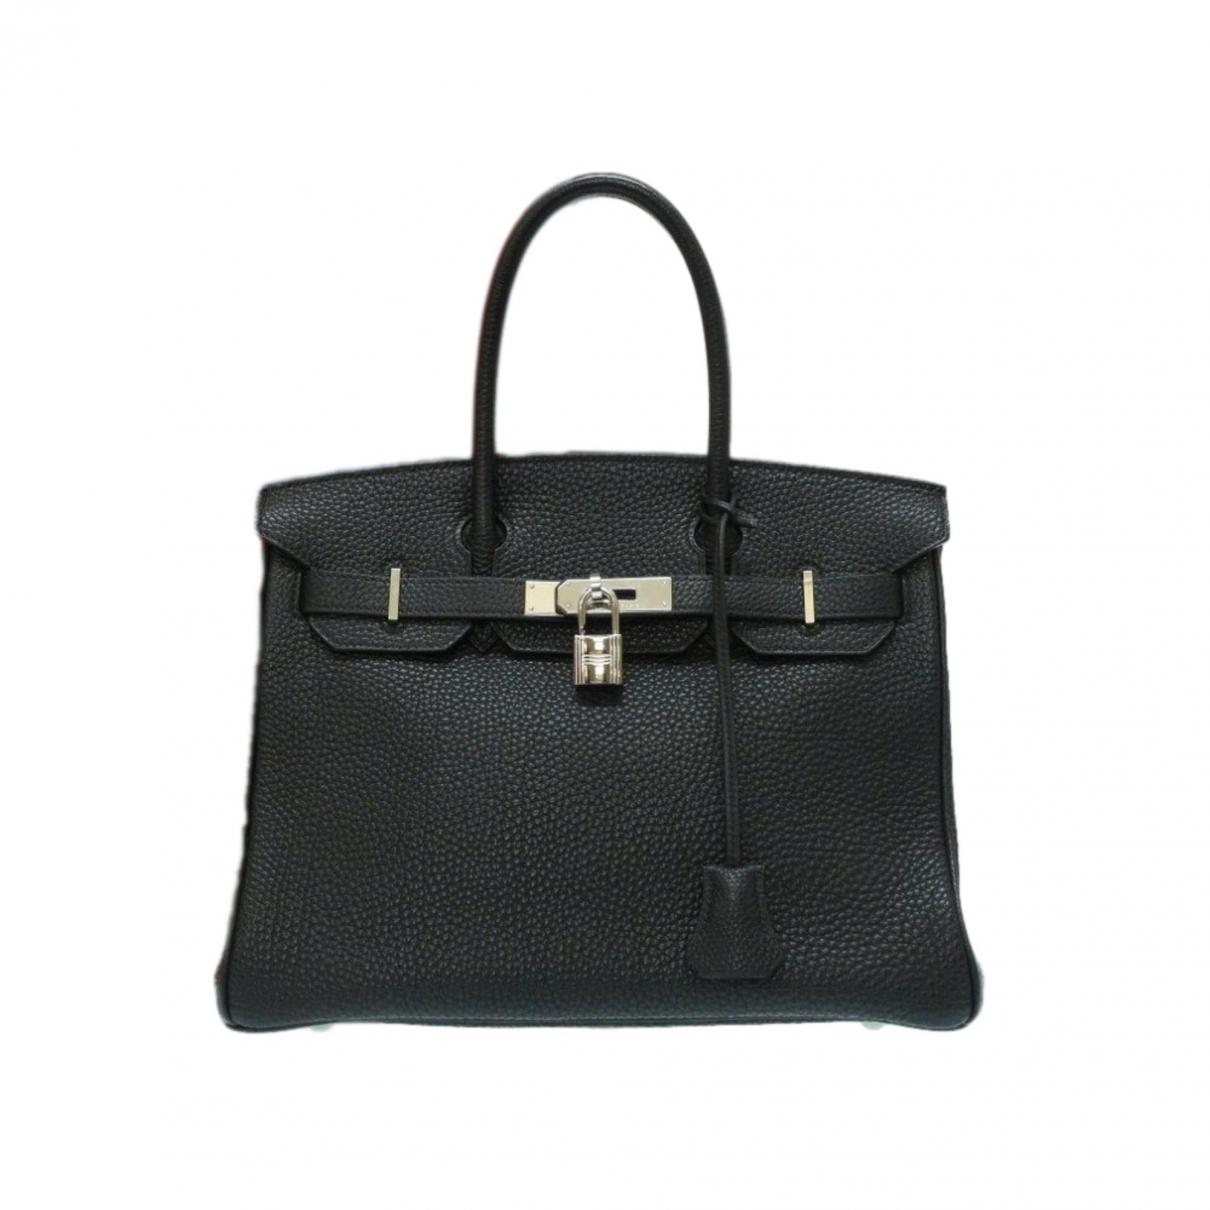 Lyst - Hermès Pre-owned Birkin 30 Black Leather Handbags in Black - Save 34%